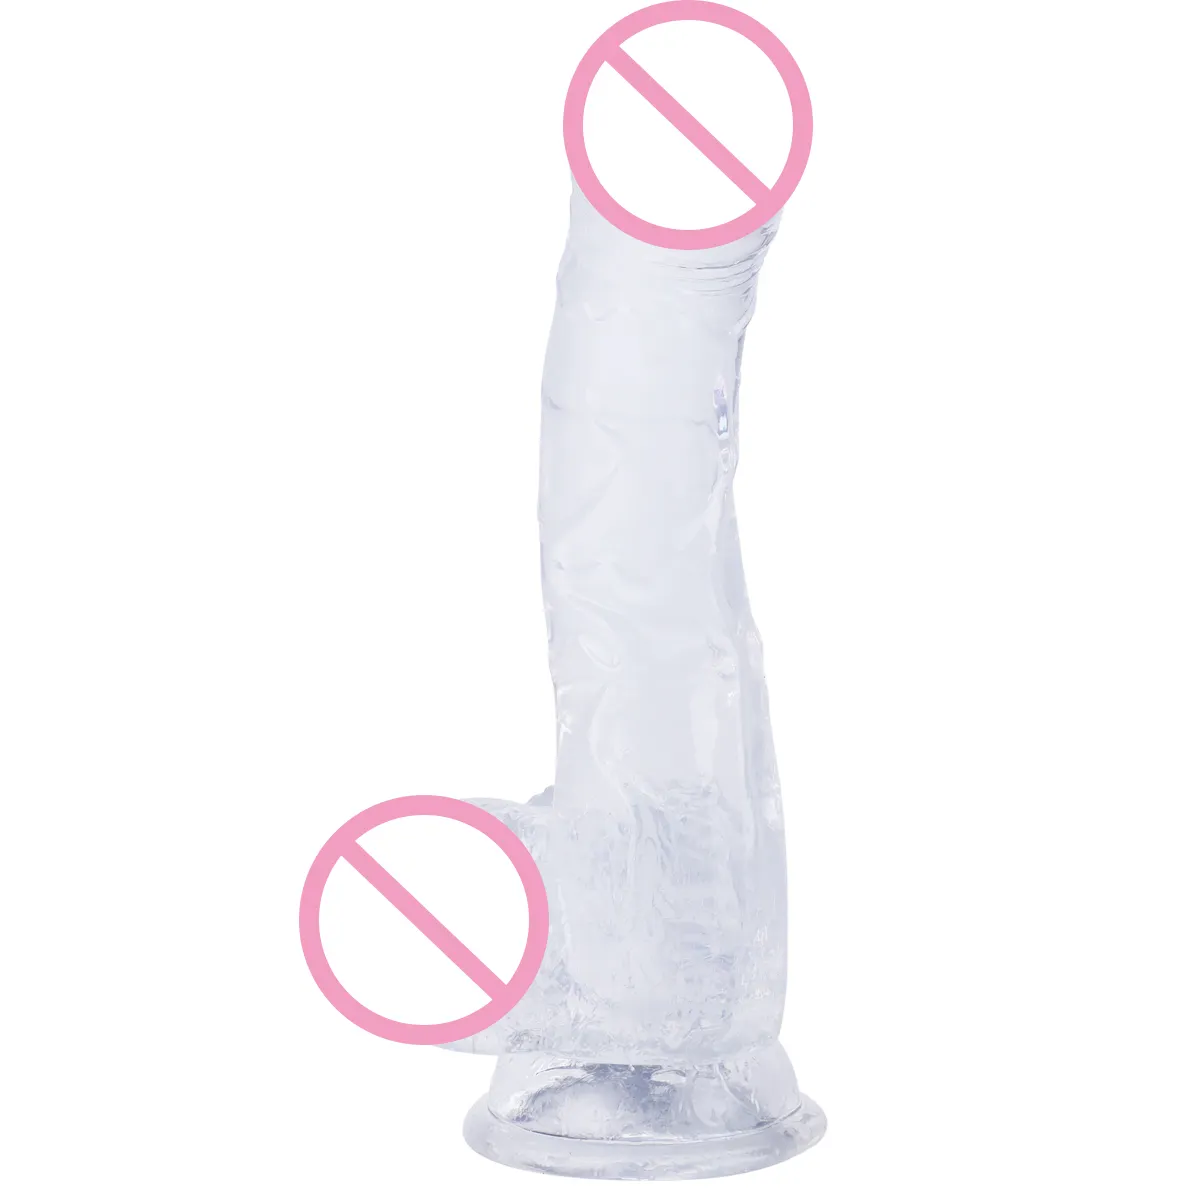 حار بيع 6 ألوان منتجات جنسية عملاق كبير TPE هلام البلاستيك القضيب لعبة جنسية واقعية دسار للنساء والرجال